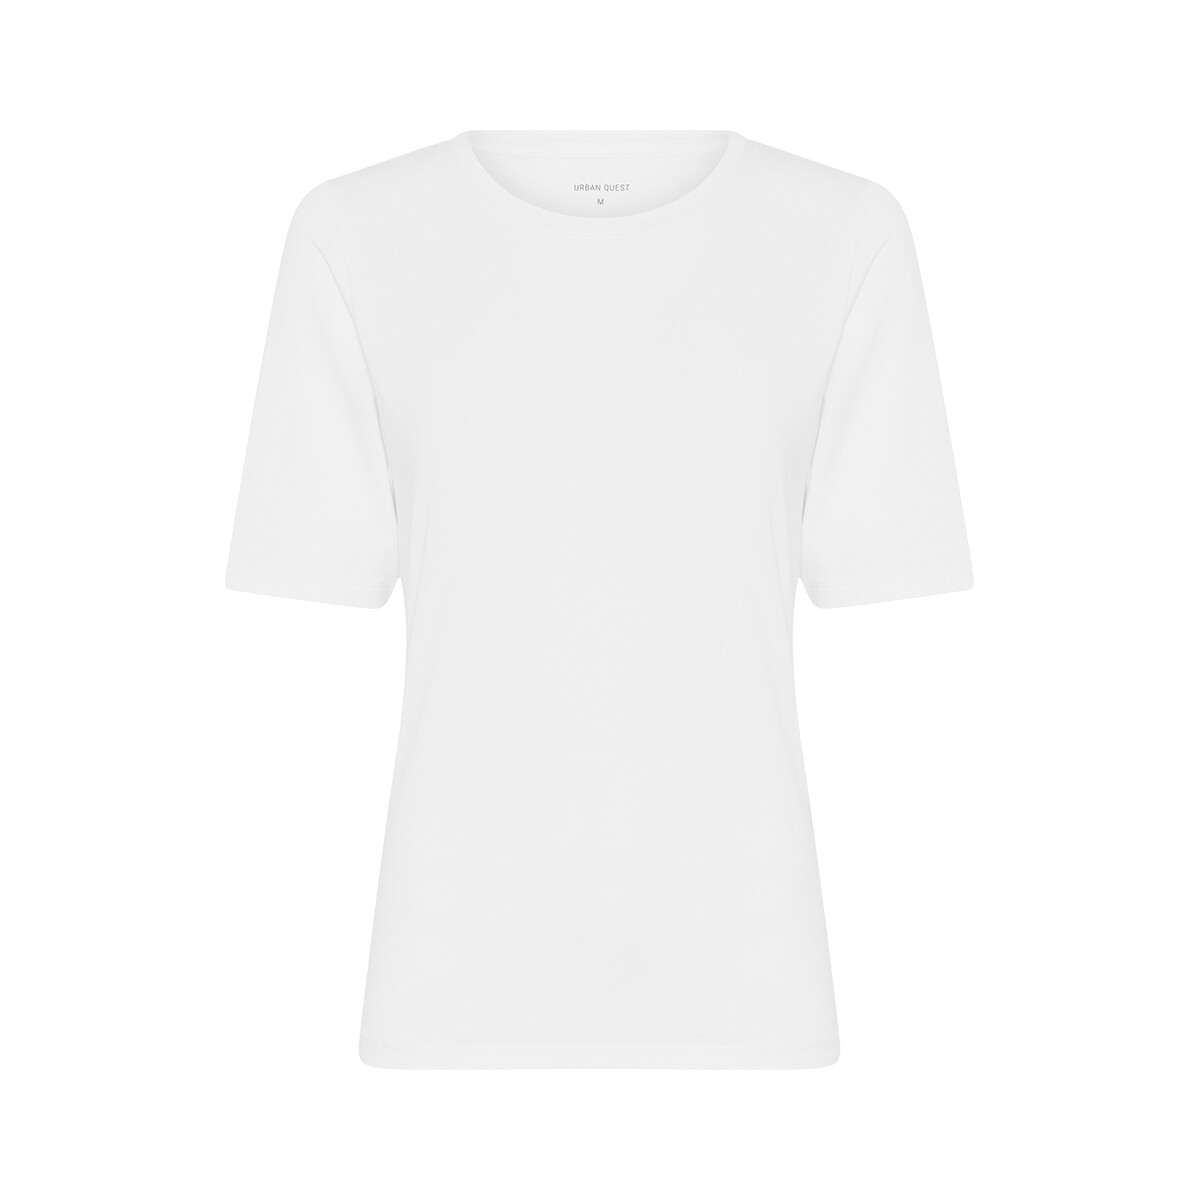 Urban Quest Bamboo Slim Fit T-shirt, Farbe: Weiß, Größe: M, Damen von Urban Quest